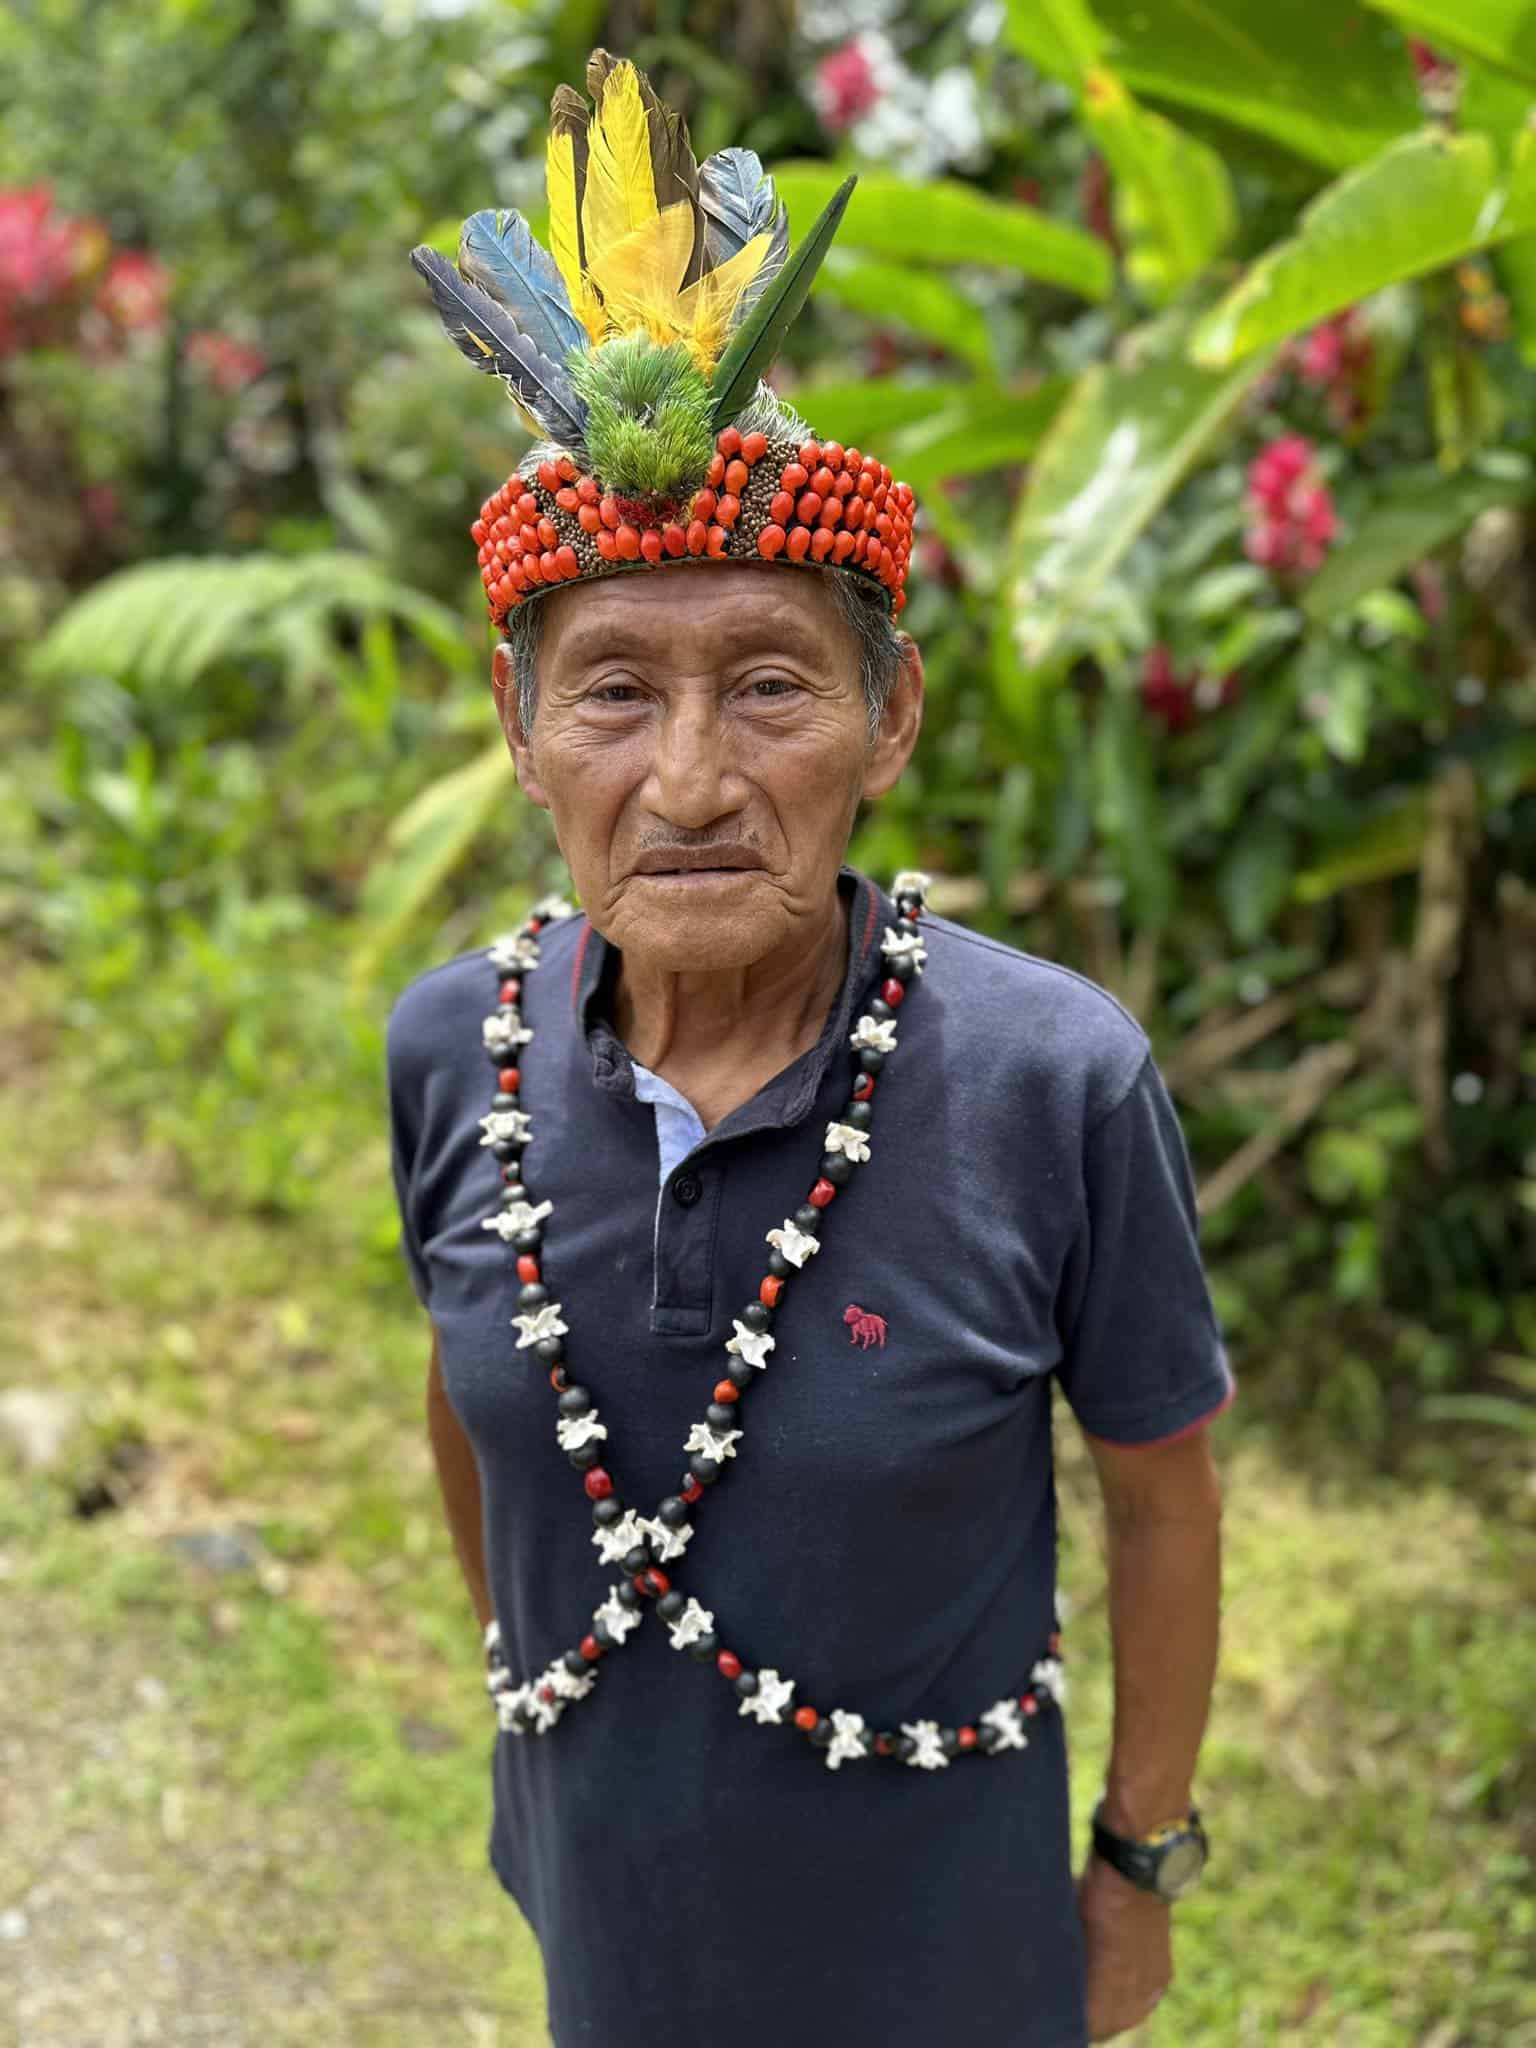 don carlos landazuri shaman yachak from napo ecuador